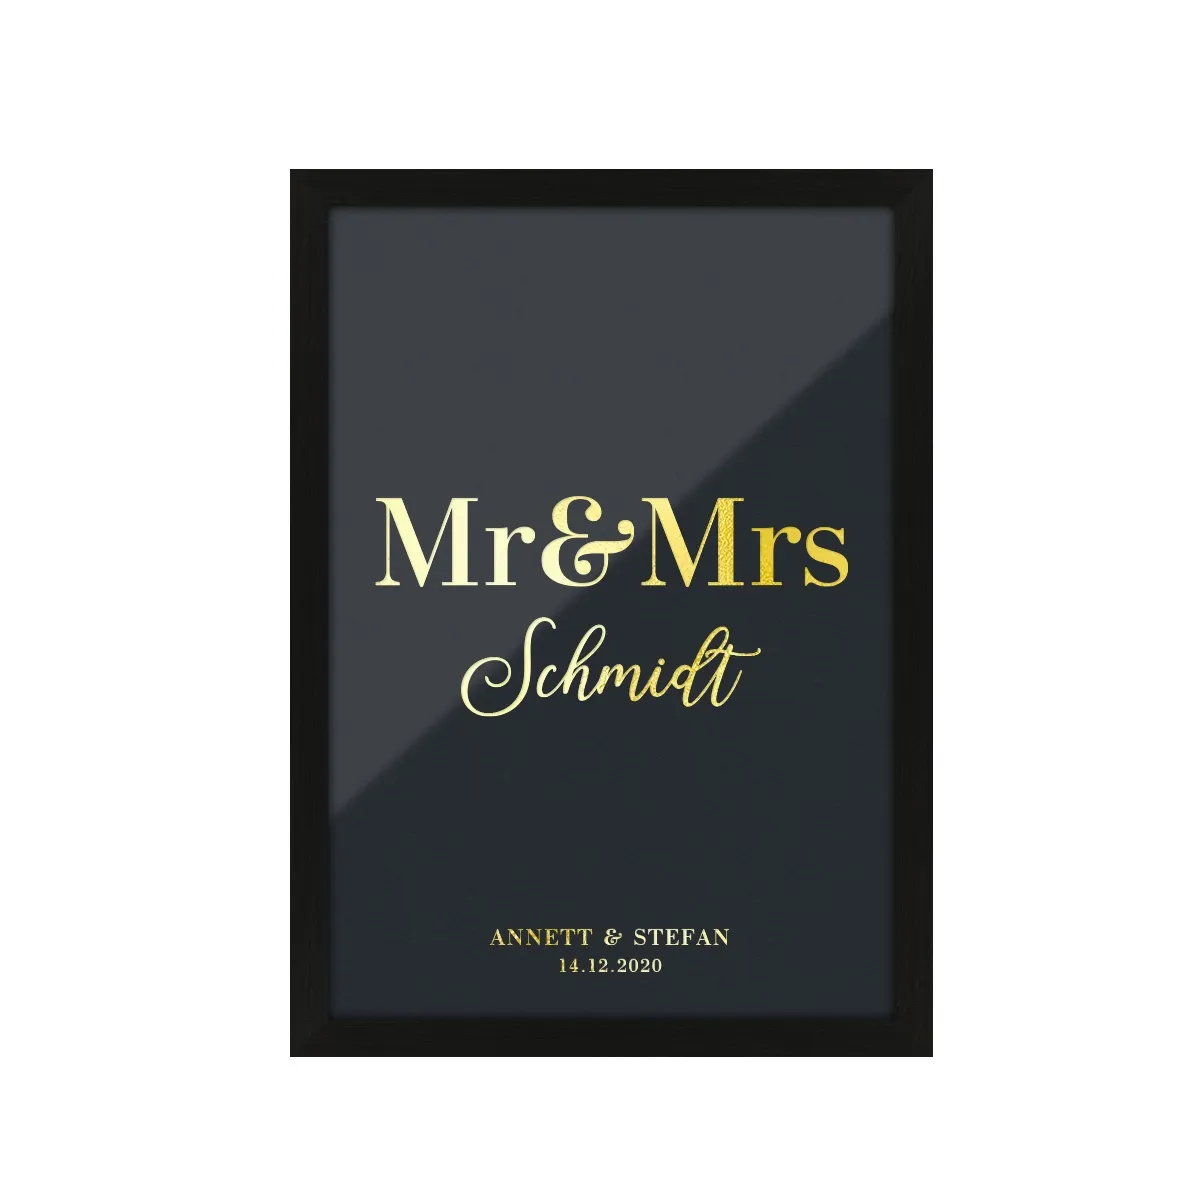 Personalisiertes Kunstdruck Poster mit Heißfolienprägung - Mr & Mrs